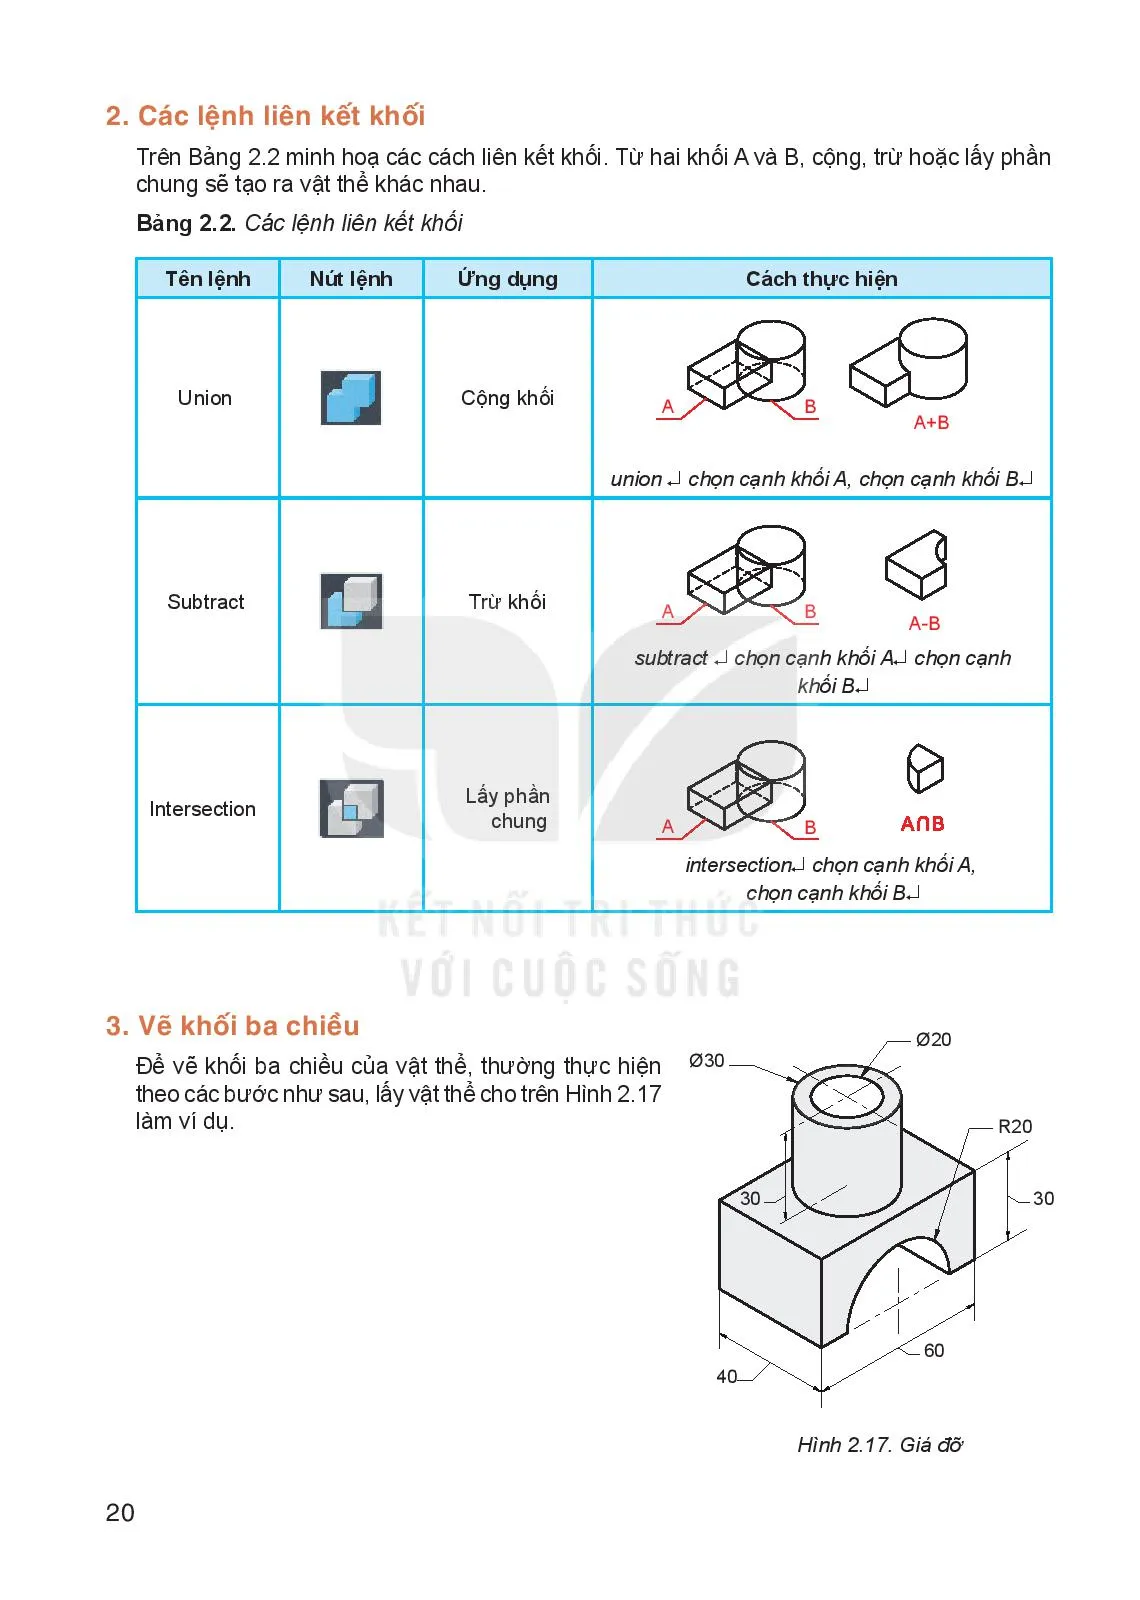 Bài 2. Sử dụng phần mềm CAD để lập bản vẽ kĩ thuật